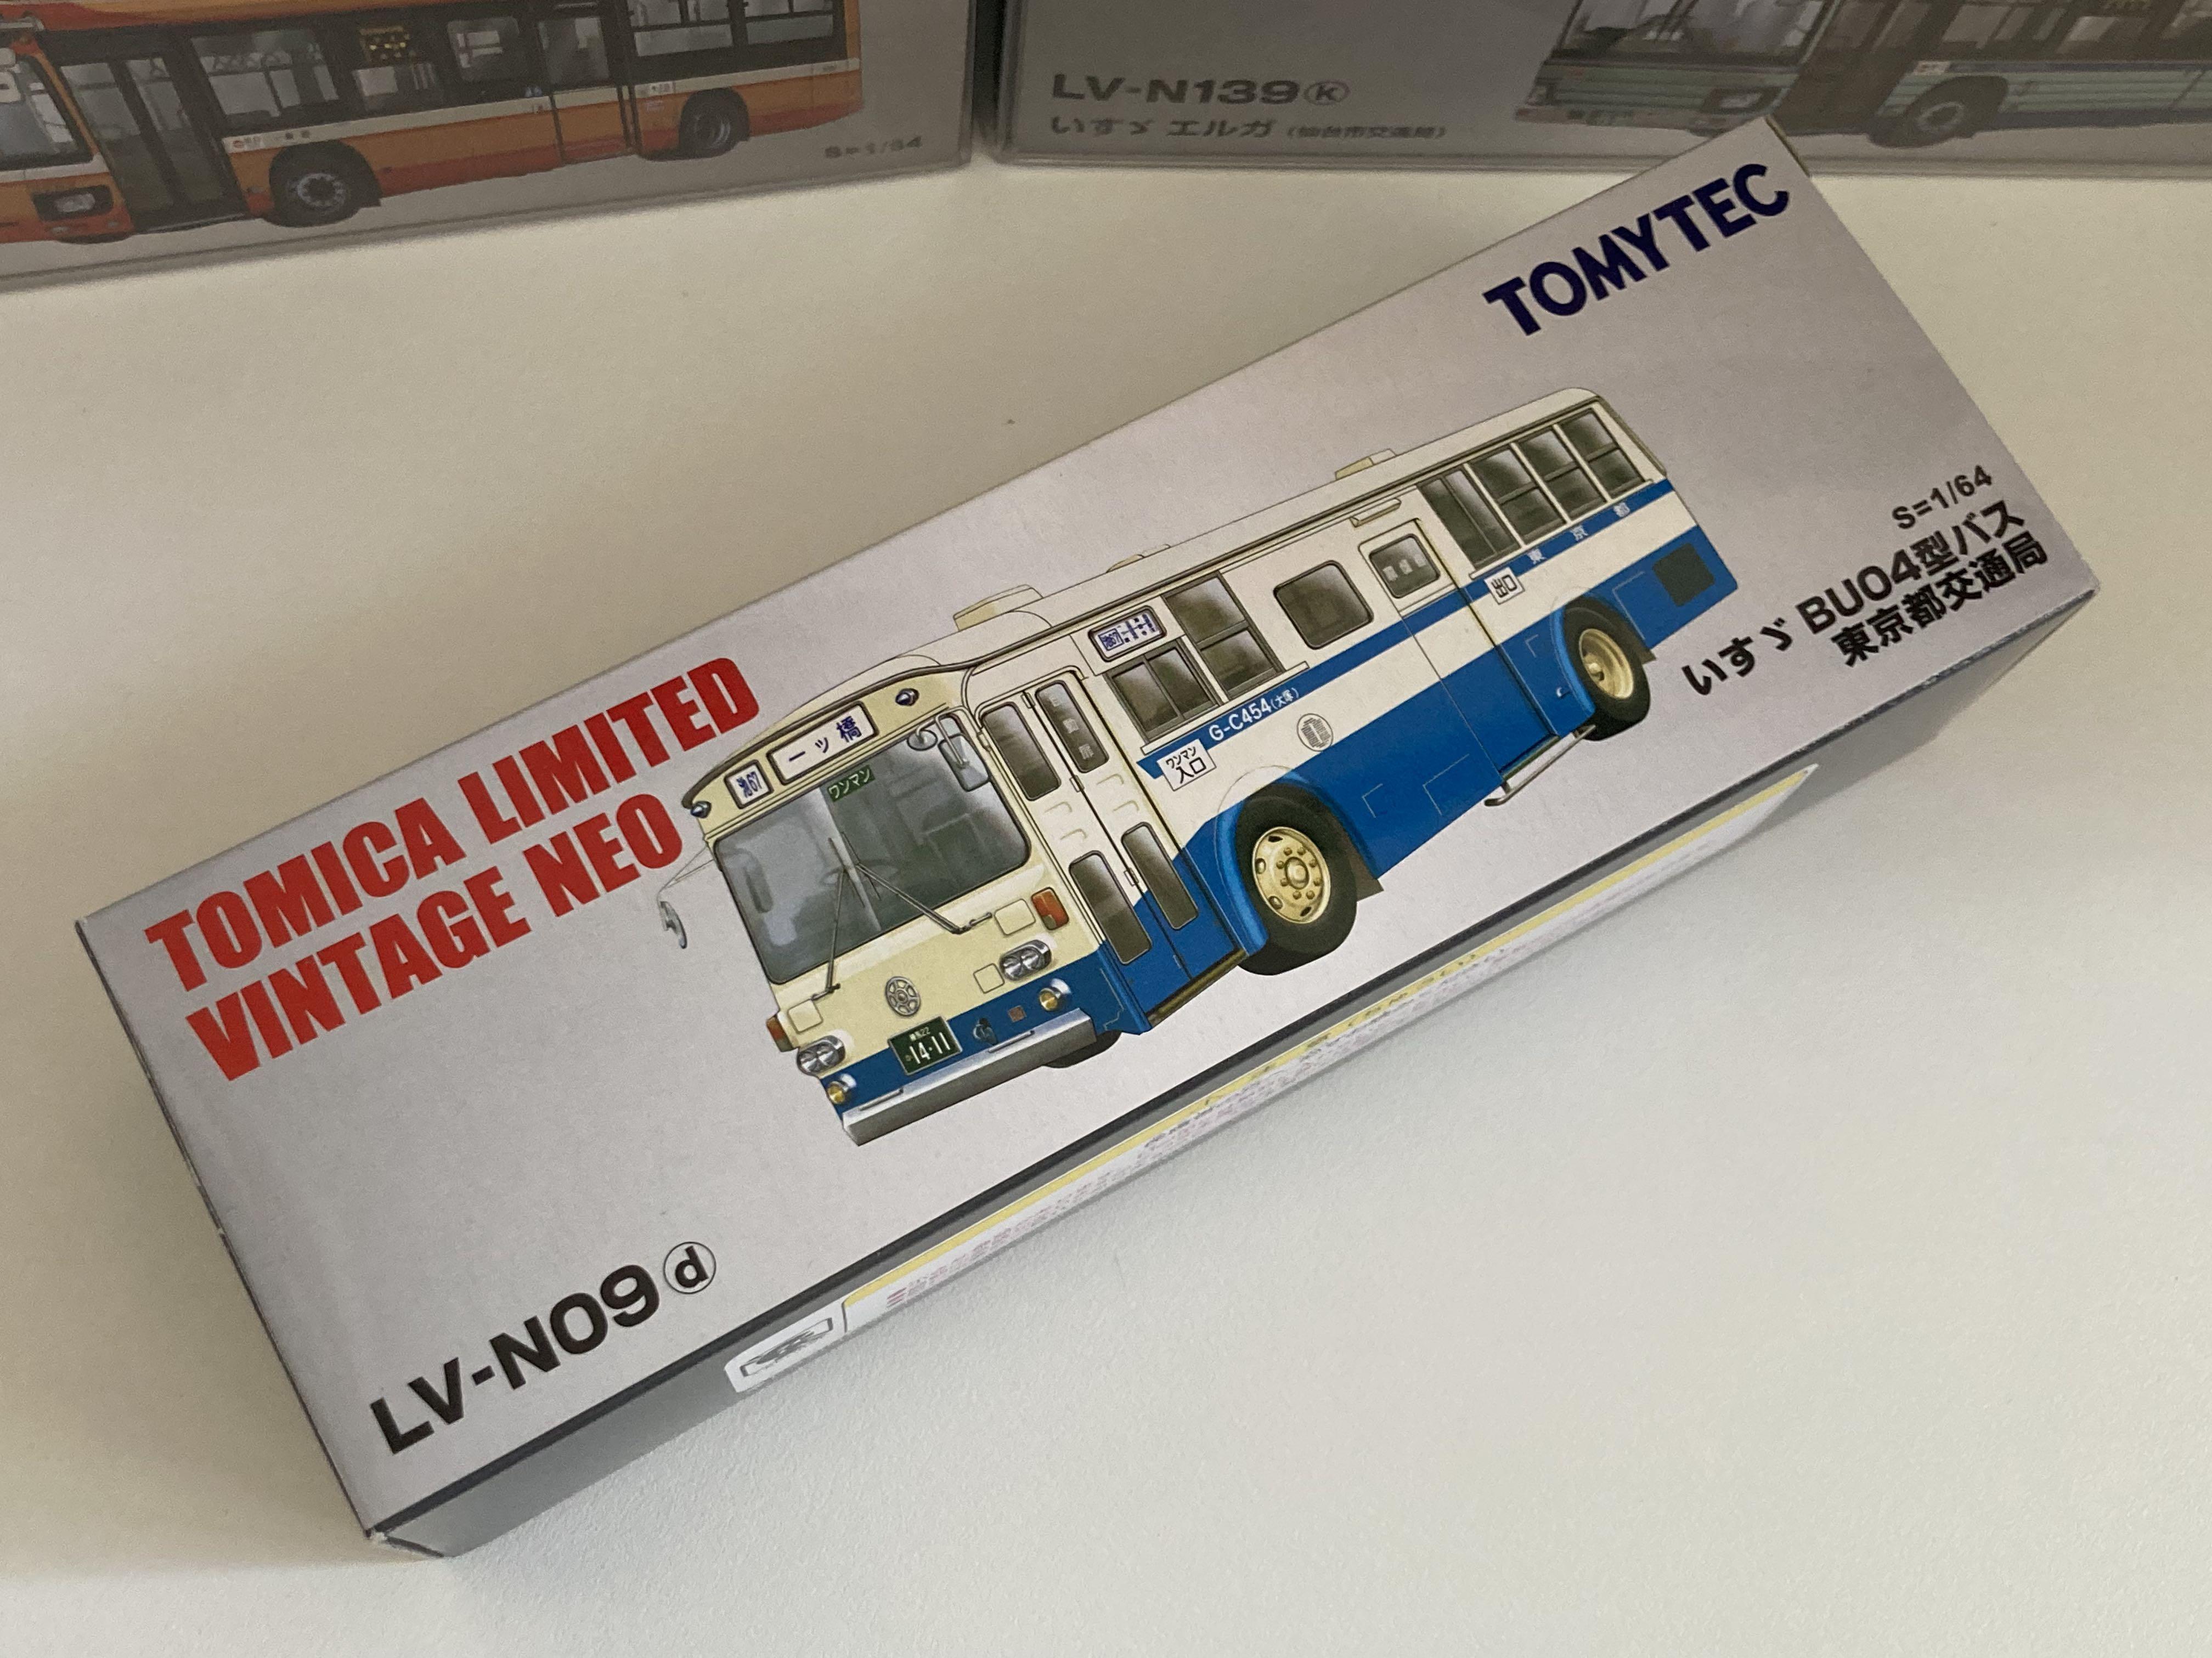 Tomytec 1 64 いすゞbuo4型バス 東京都交通局 Sale 66 Off